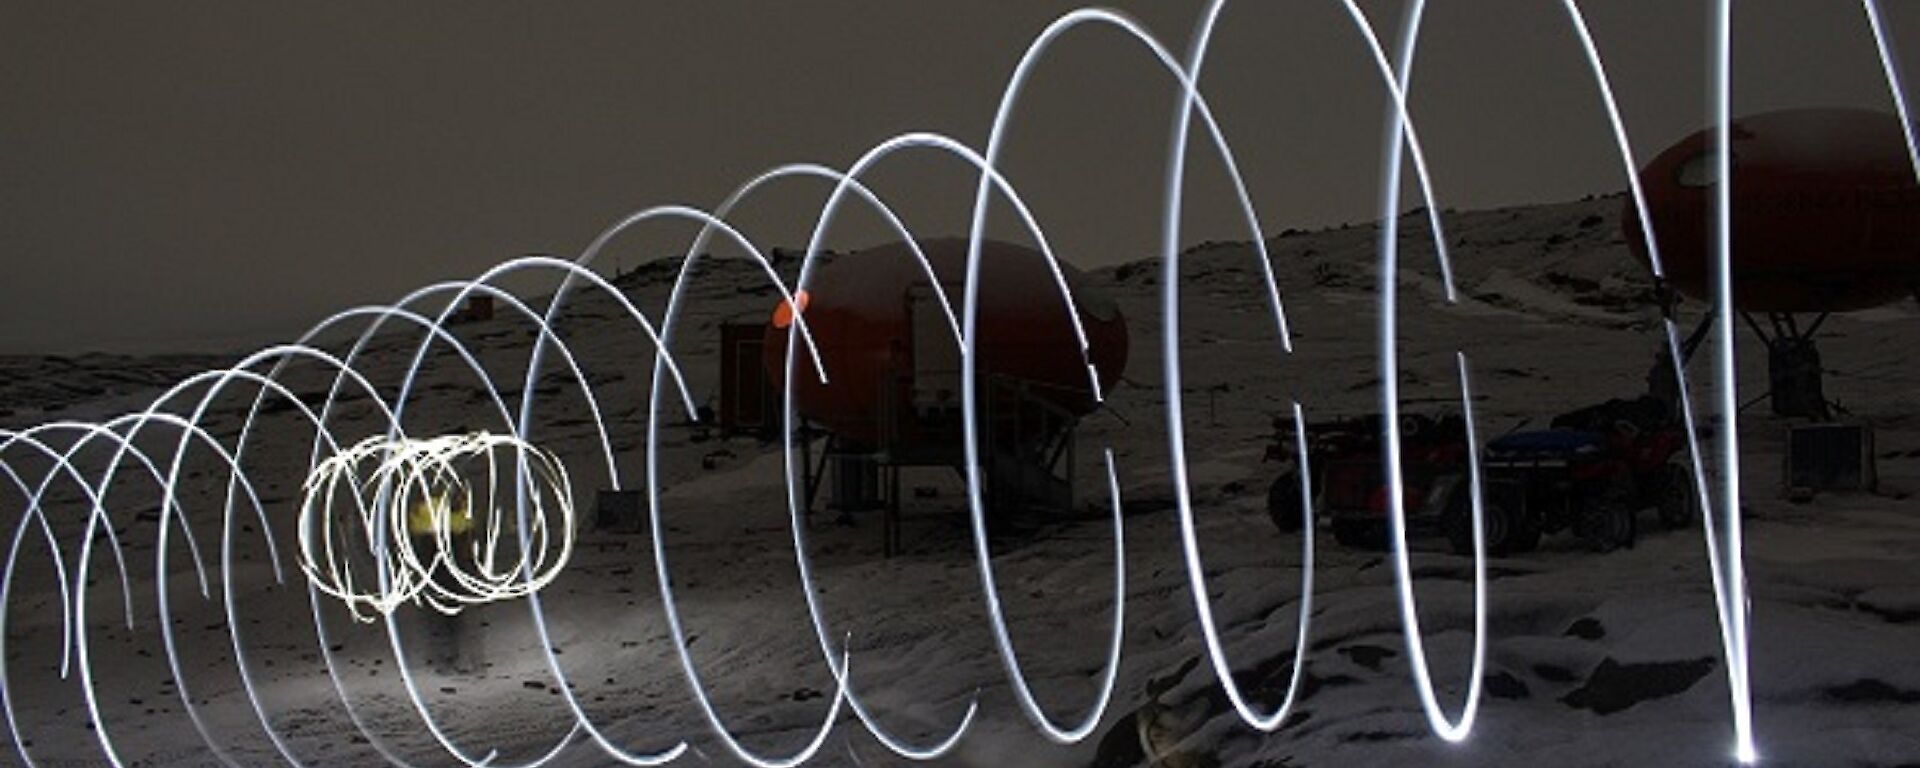 Light swirls appear across a snowy landscape